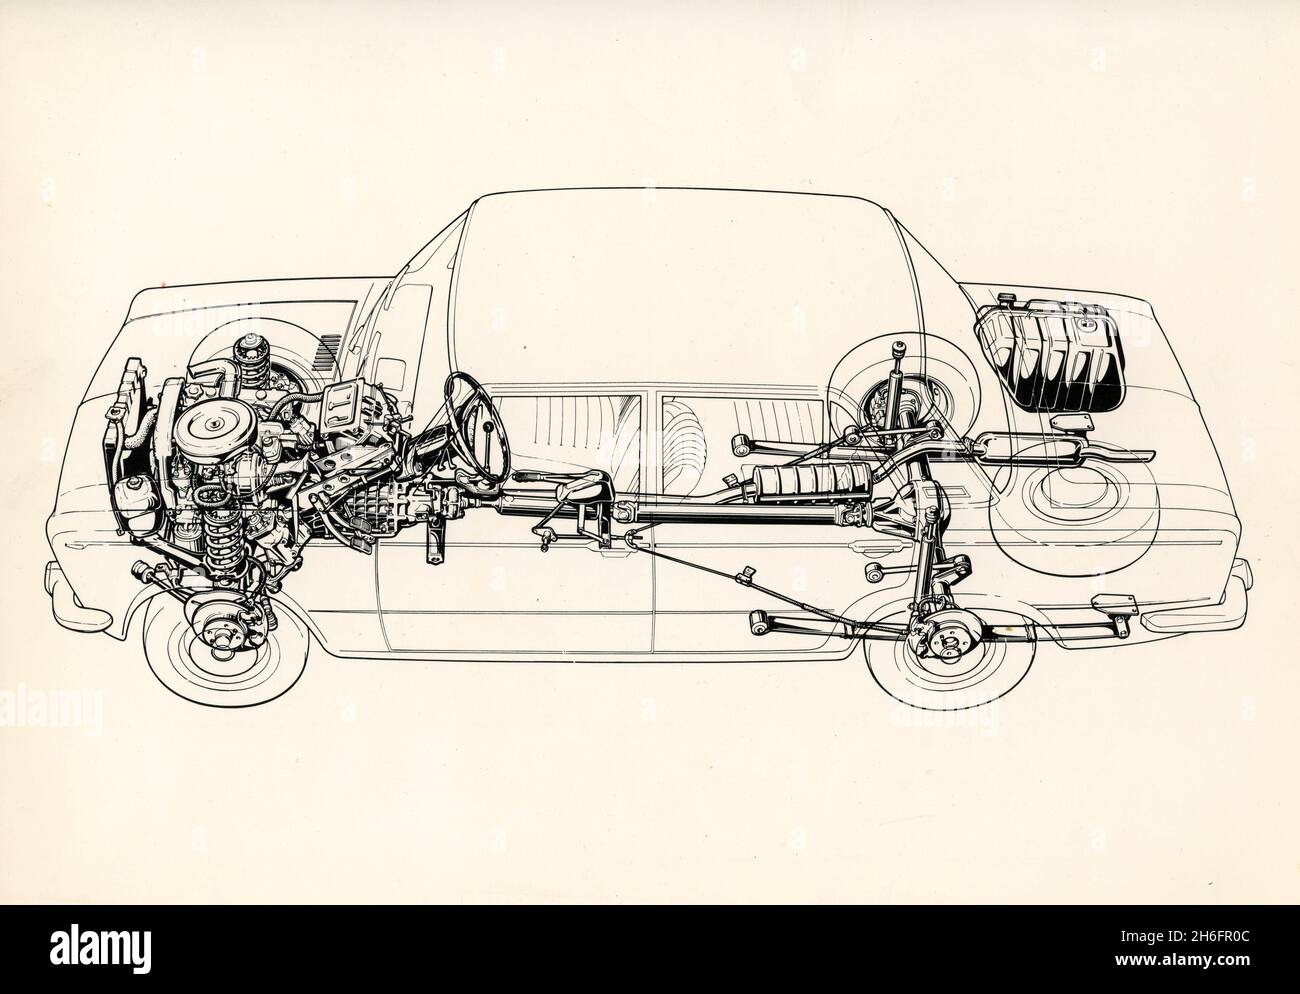 Dessin de la structure et des composants mécaniques de la berline FIAT 125 quatre portes, Italie 1967 Banque D'Images